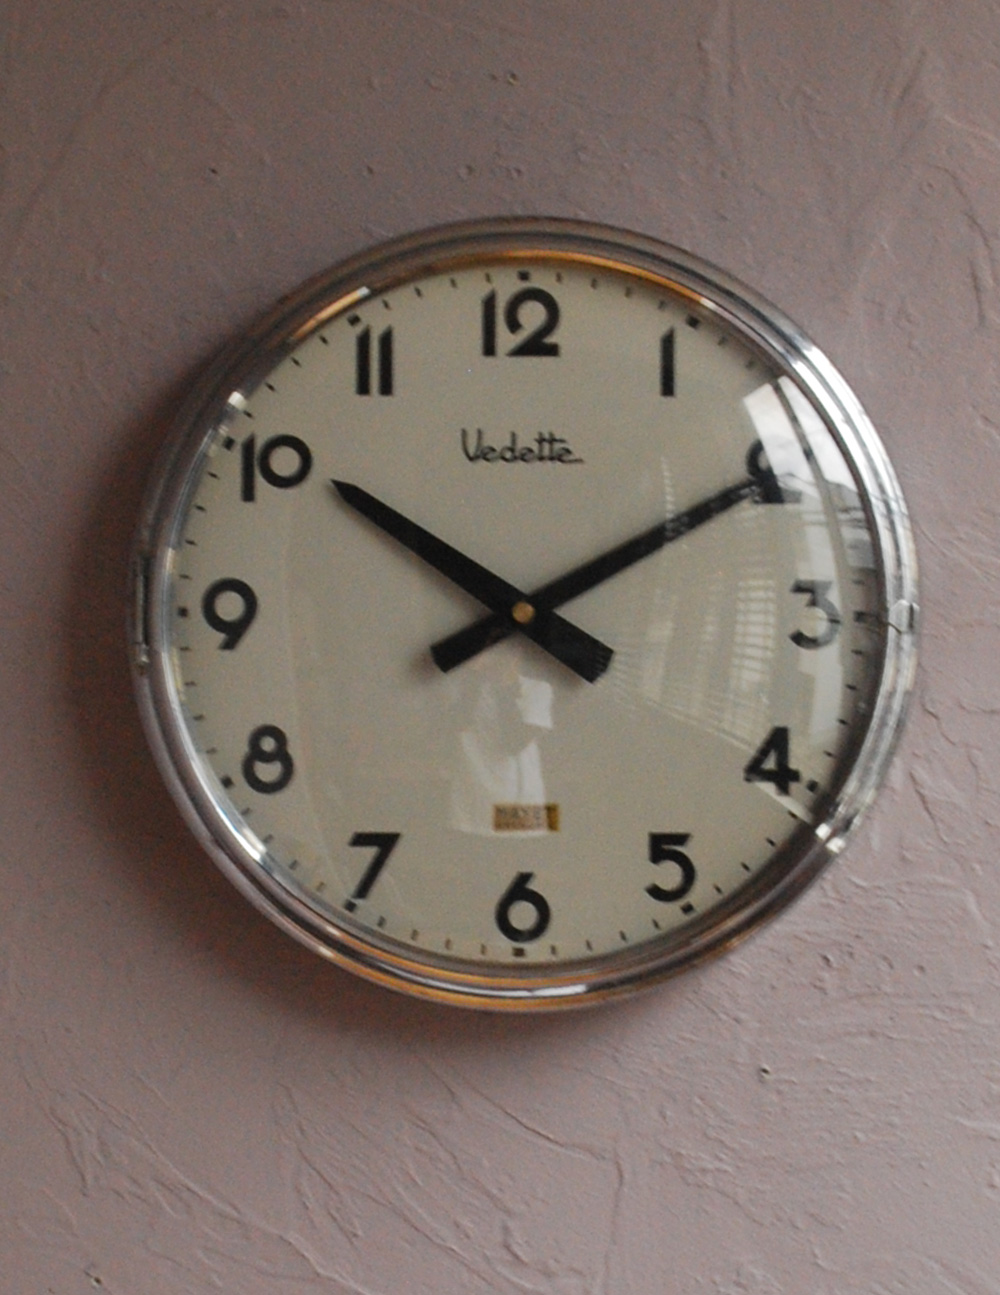 パリの時計メーカーvedette社のアンティーク壁掛け時計 ウォールクロック M 1473 Z アンティーク雑貨